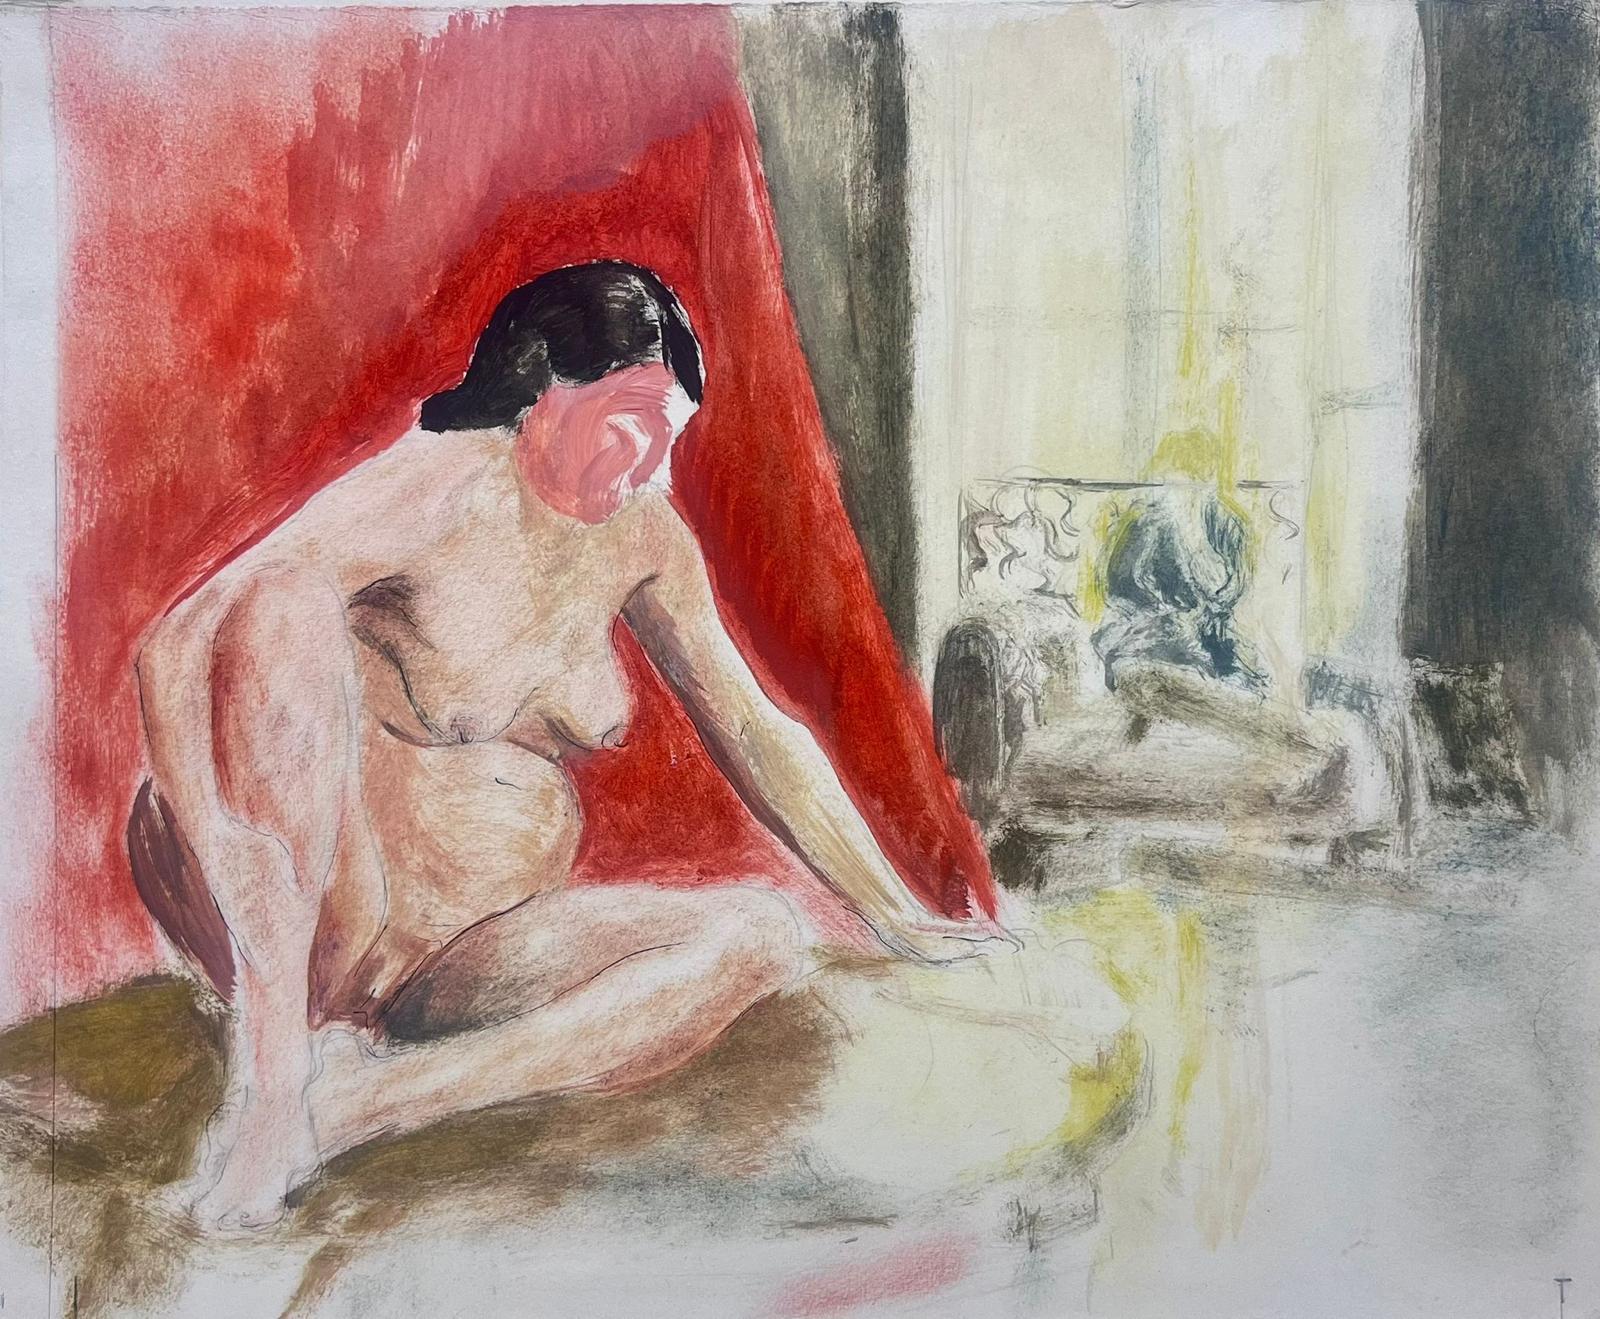 Peinture post-impressionniste française des années 1950 Modèle nu dans un intérieur parisien